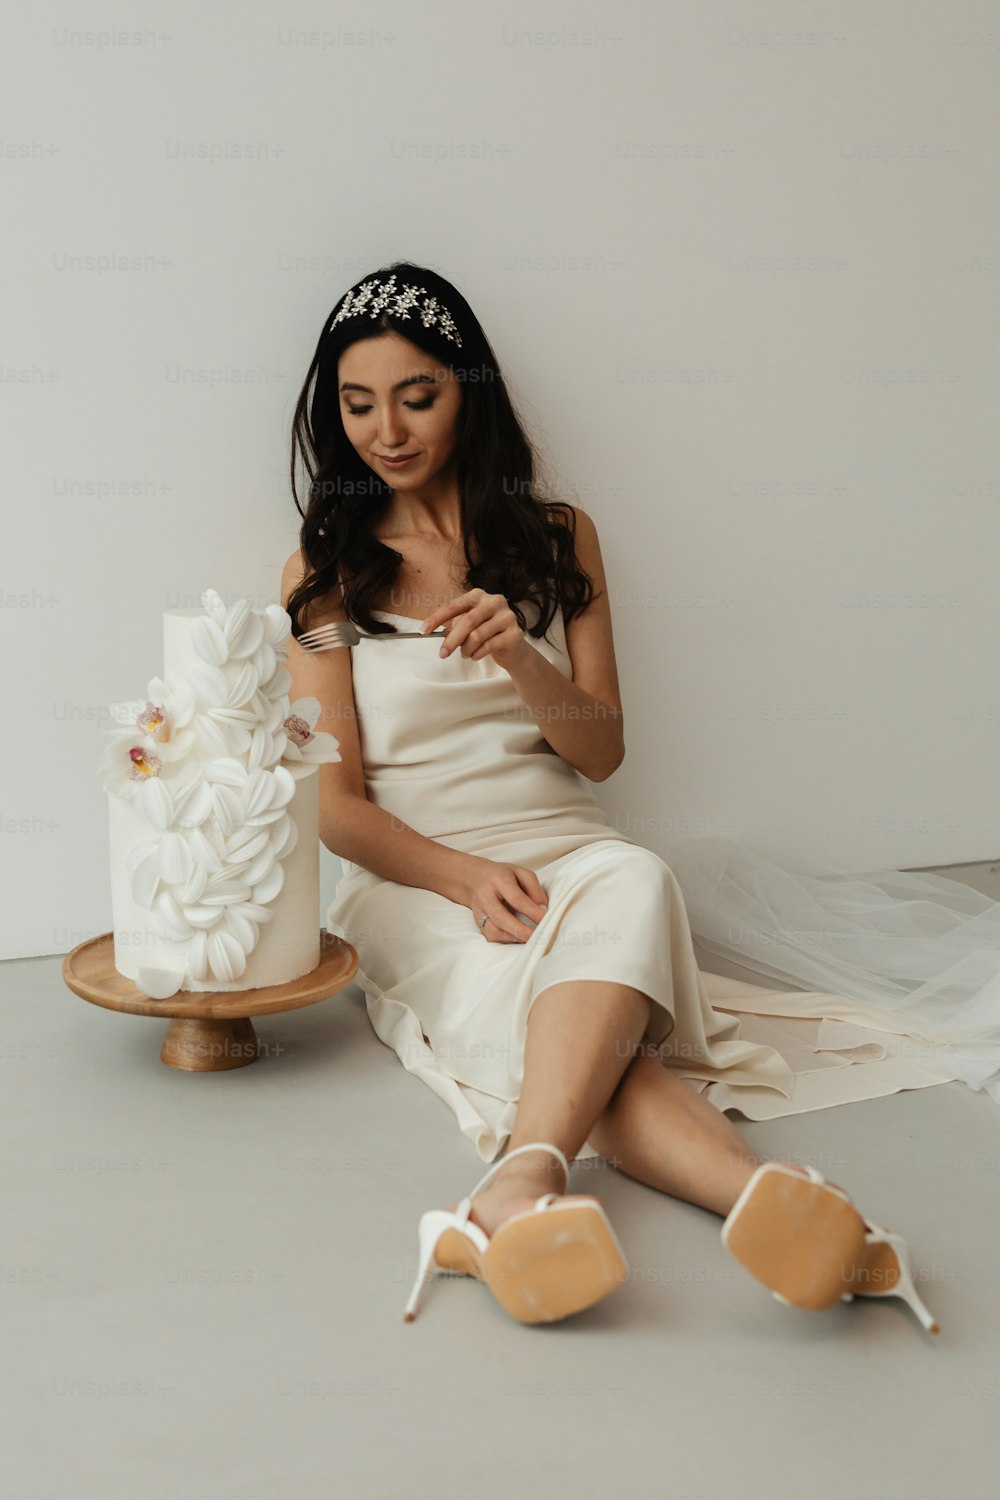 Une femme en robe blanche assise à côté d’un gâteau